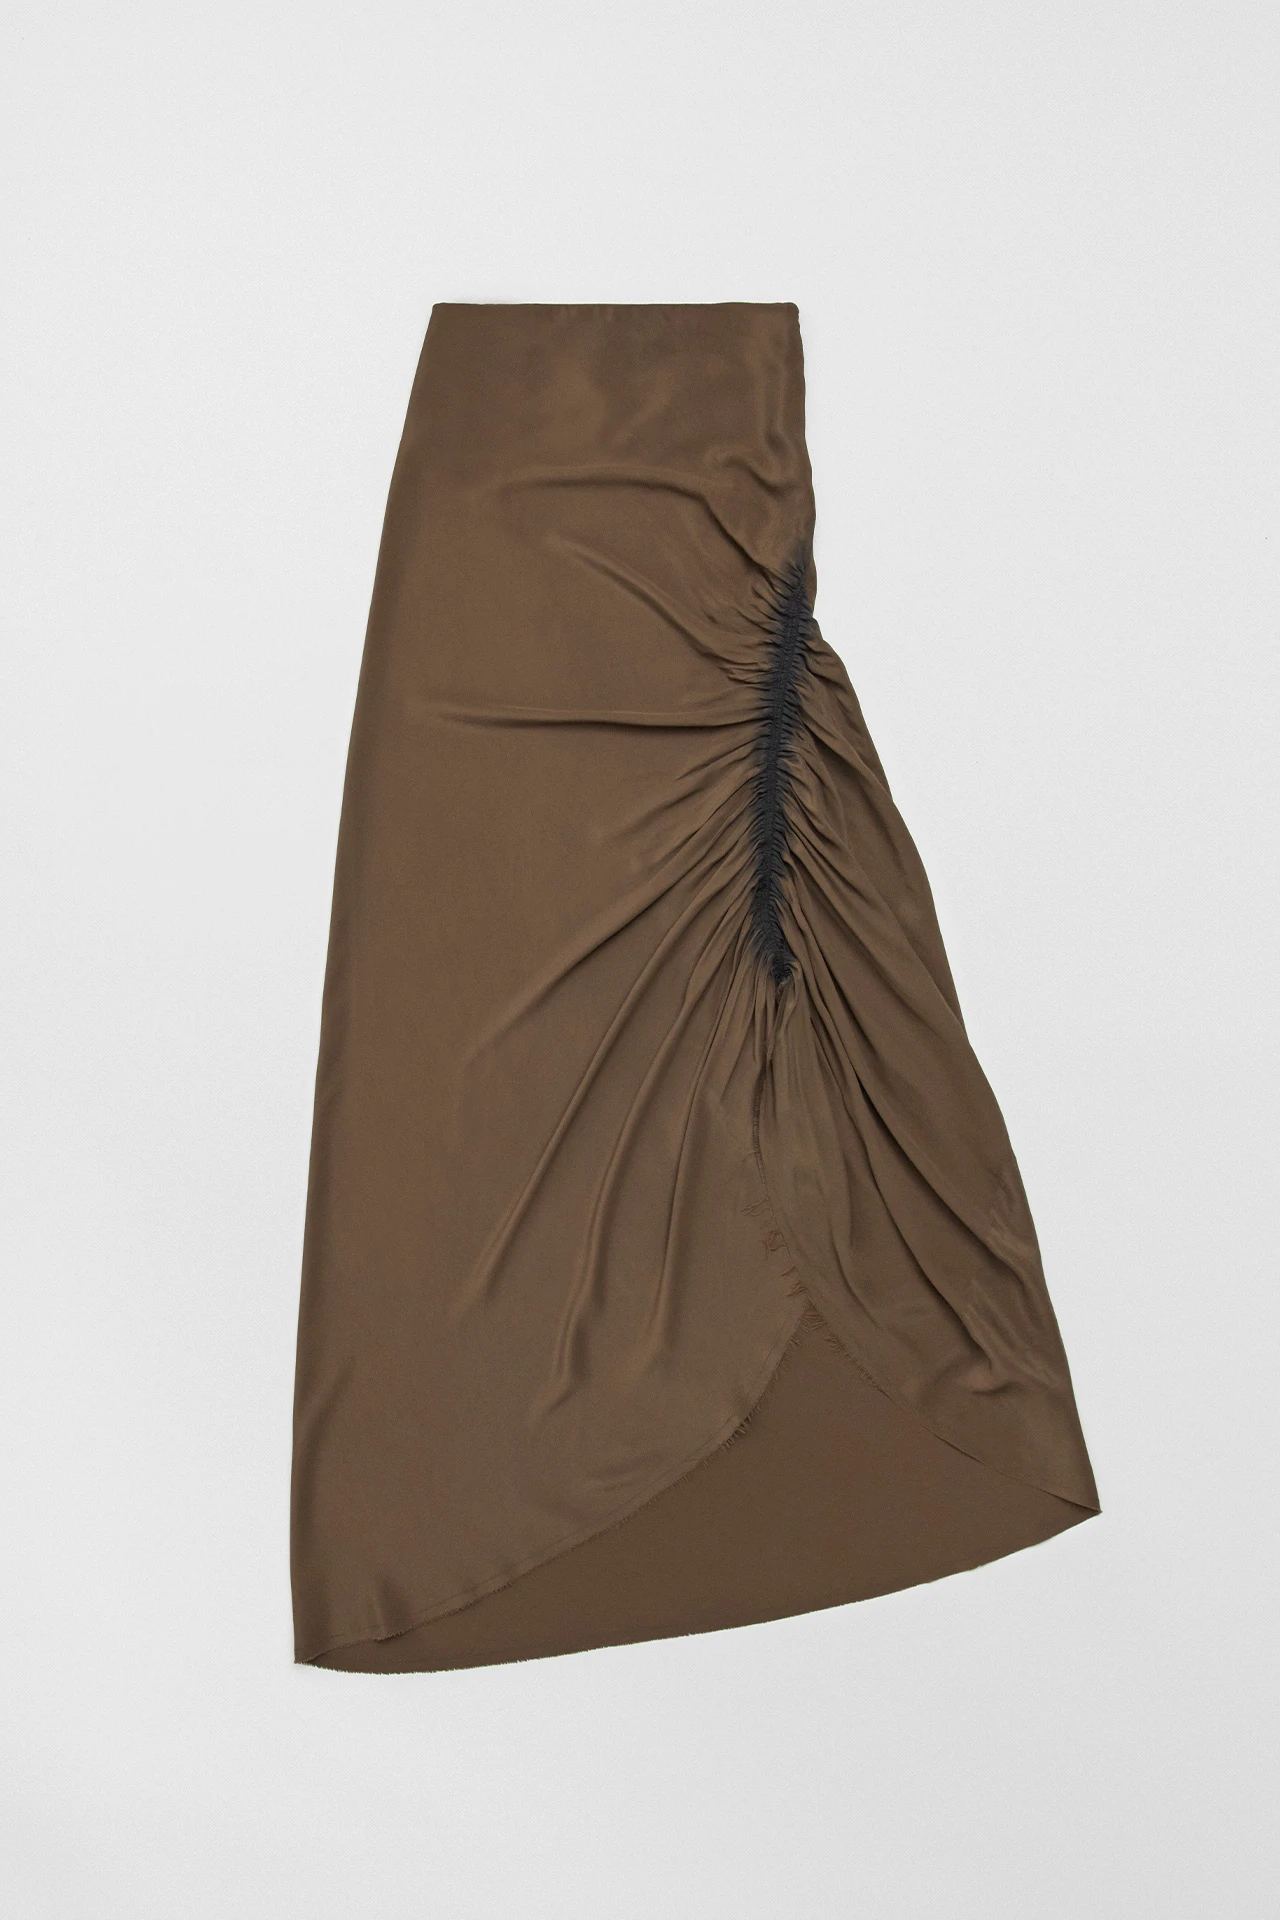 Miista-ze-brown-skirt-01